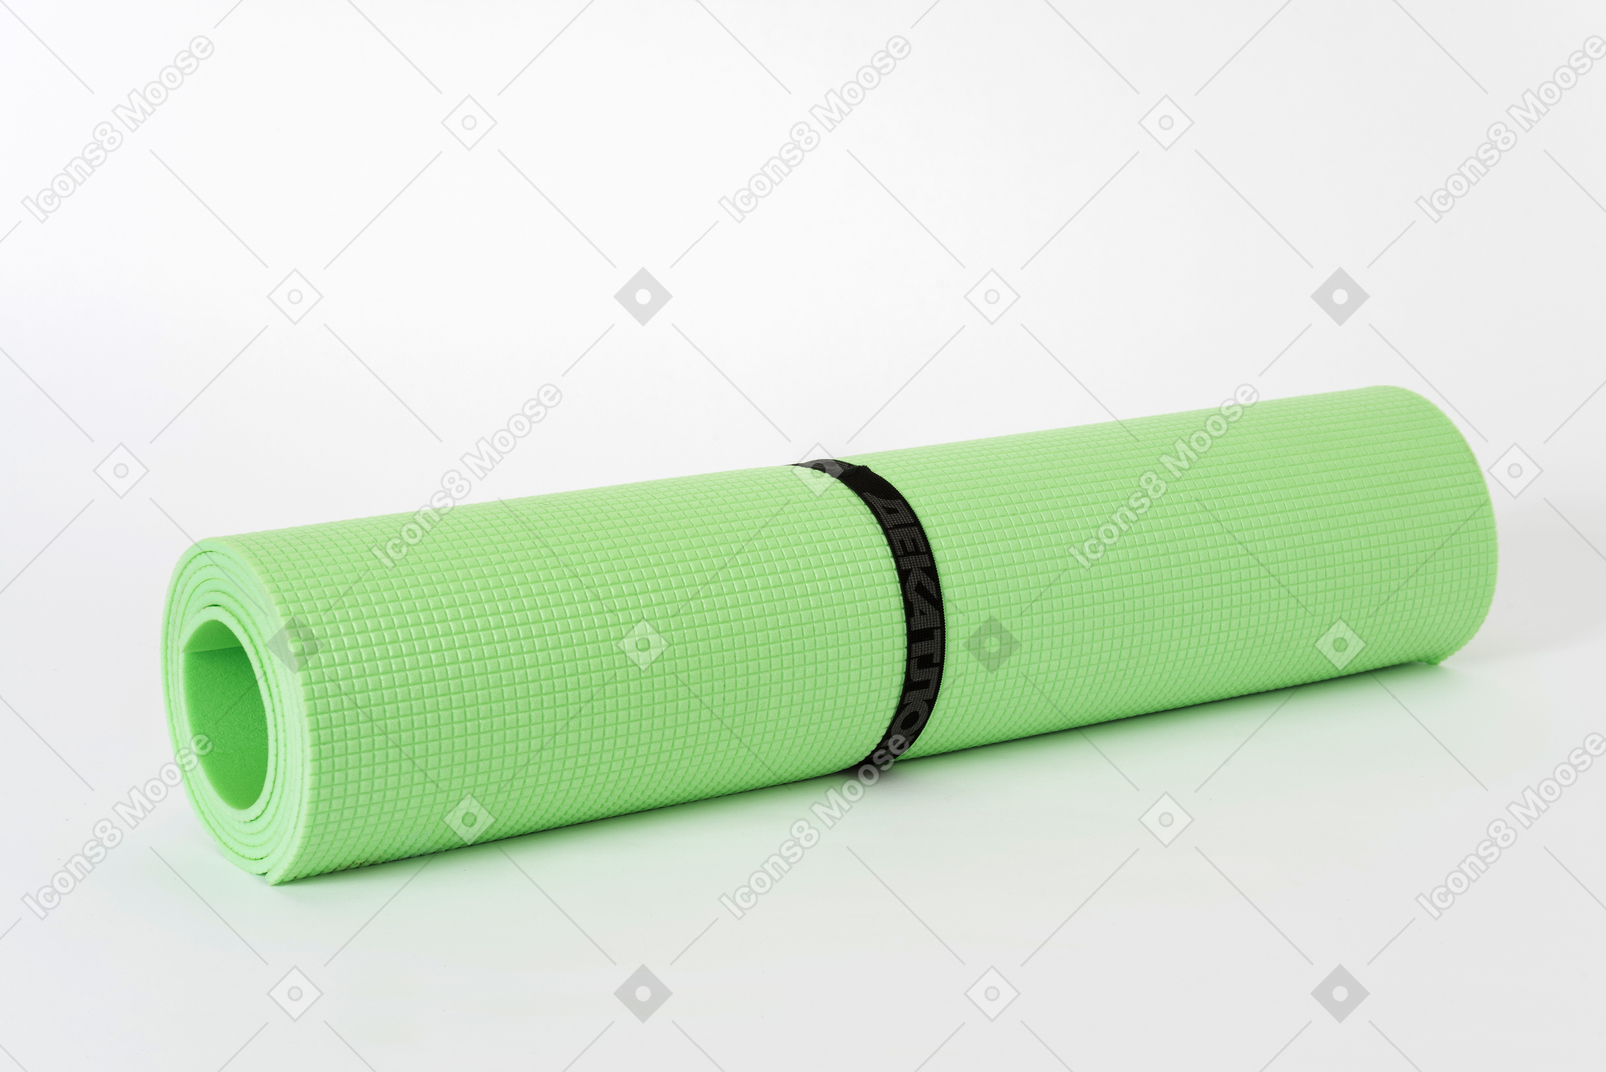 Зеленый коврик для йоги на белом фоне